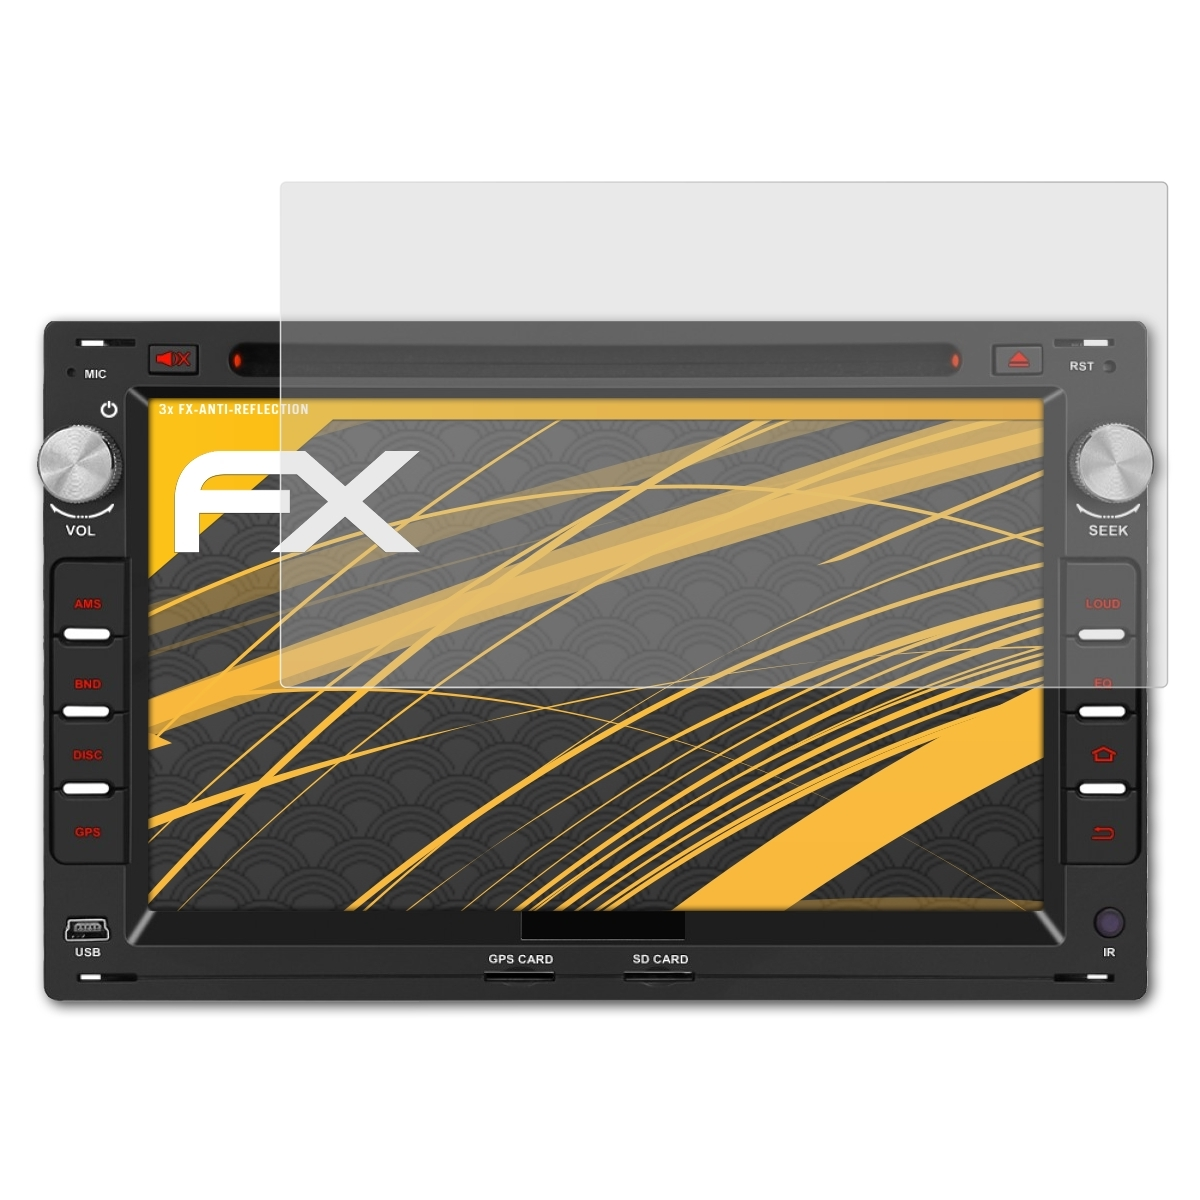 7 FX-Antireflex ATFOLIX Inch) Displayschutz(für Pumpkin AA0407B 3x